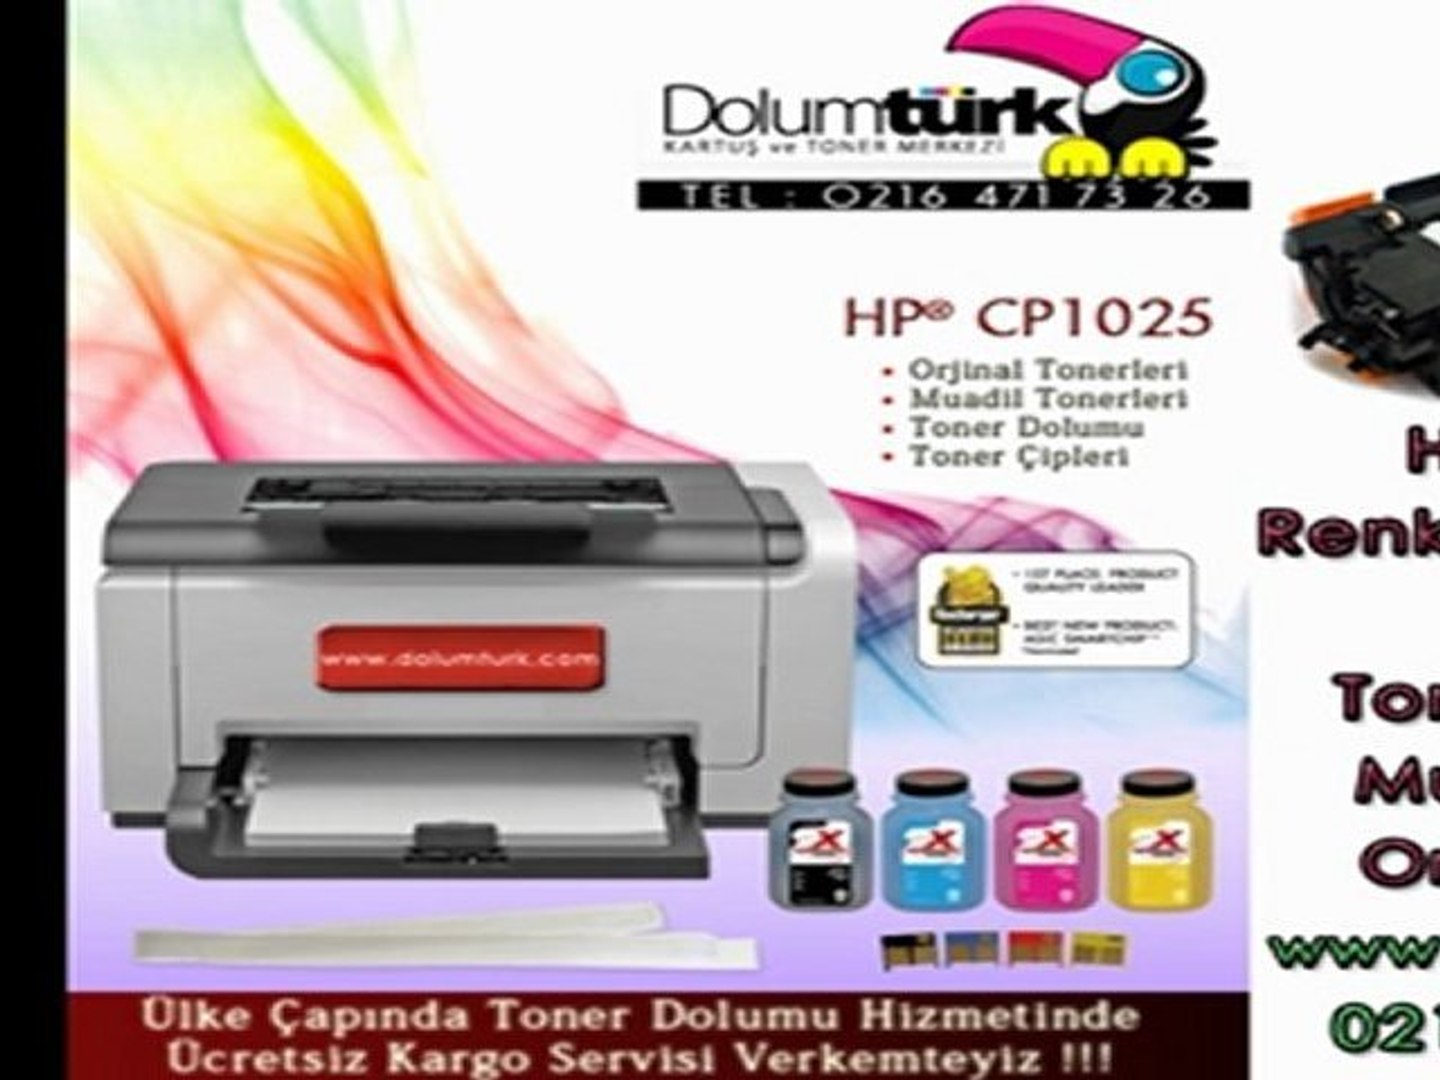 ⁣HP CP1025 Toner Dolum, Hp CP1025 Toner , Hp CE310A Toner Dolumu